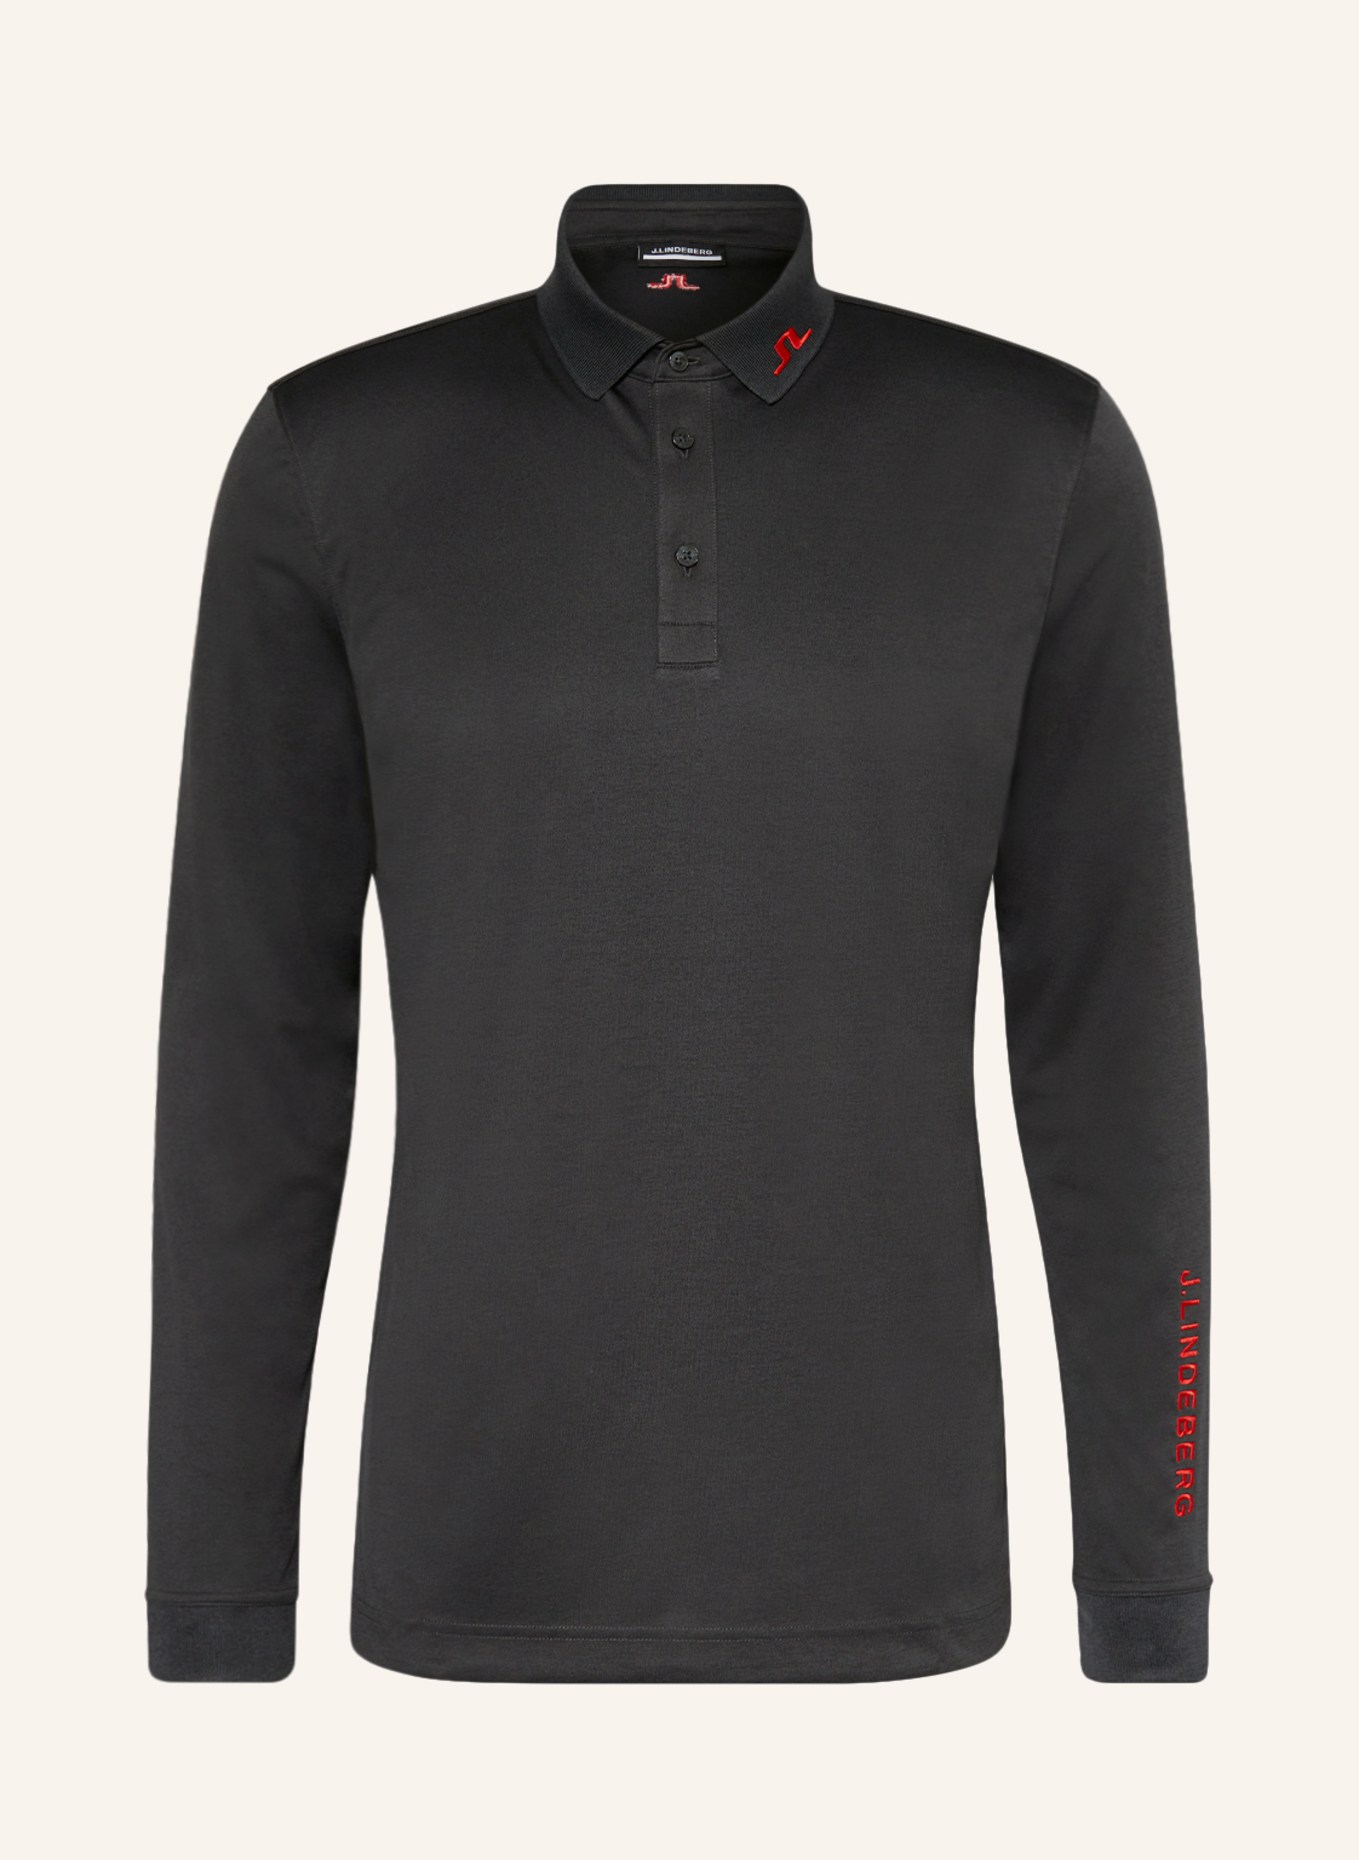 J.LINDEBERG Performance polo shirt, Color: BLACK (Image 1)